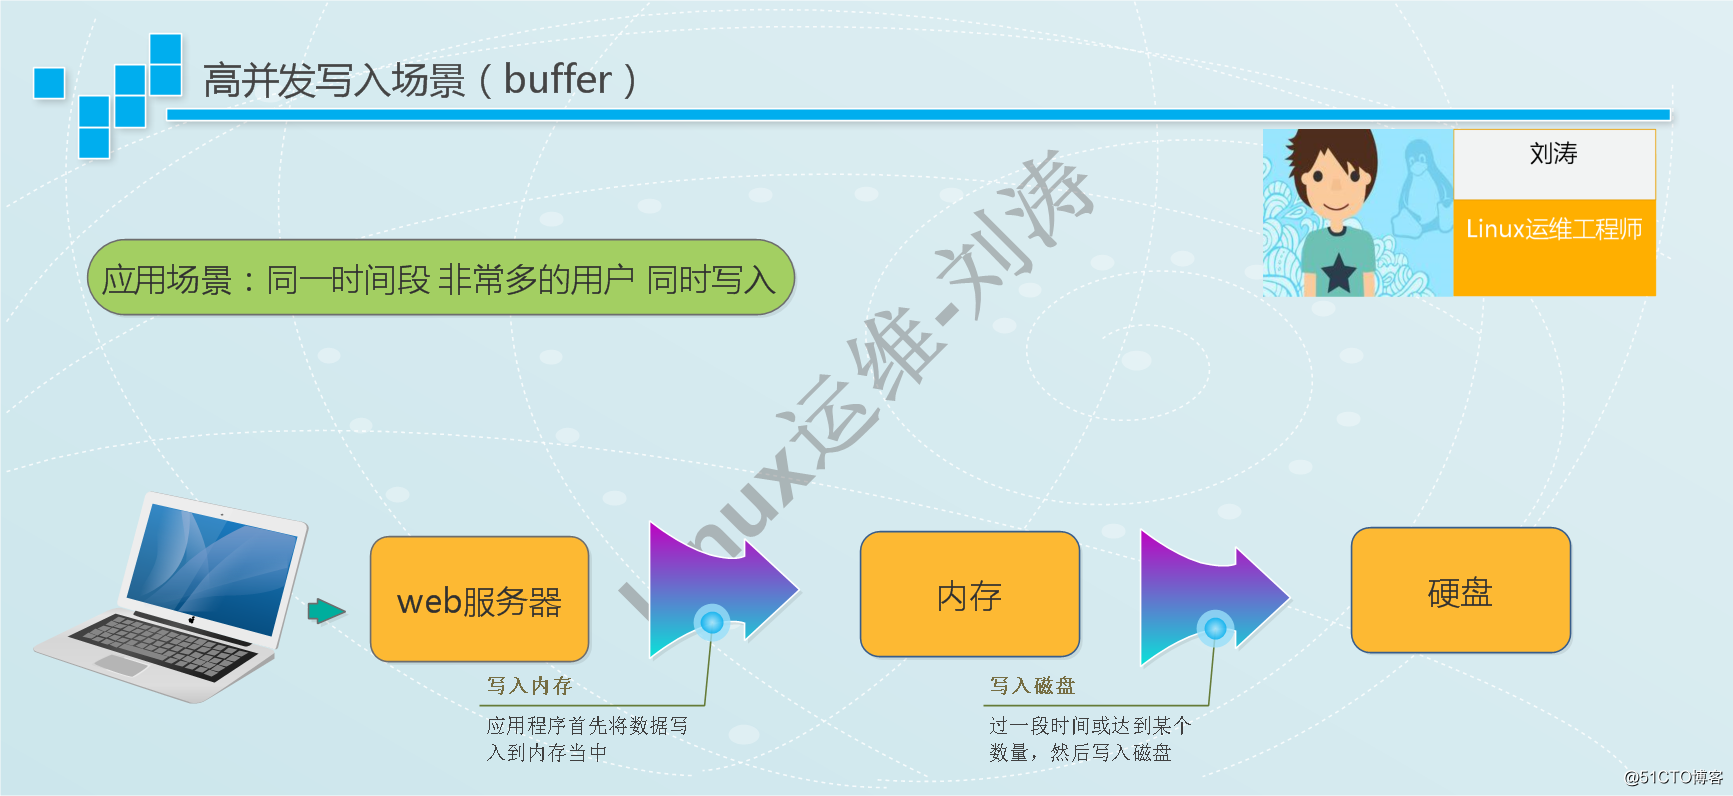 簡單說明buffer和cache的區別